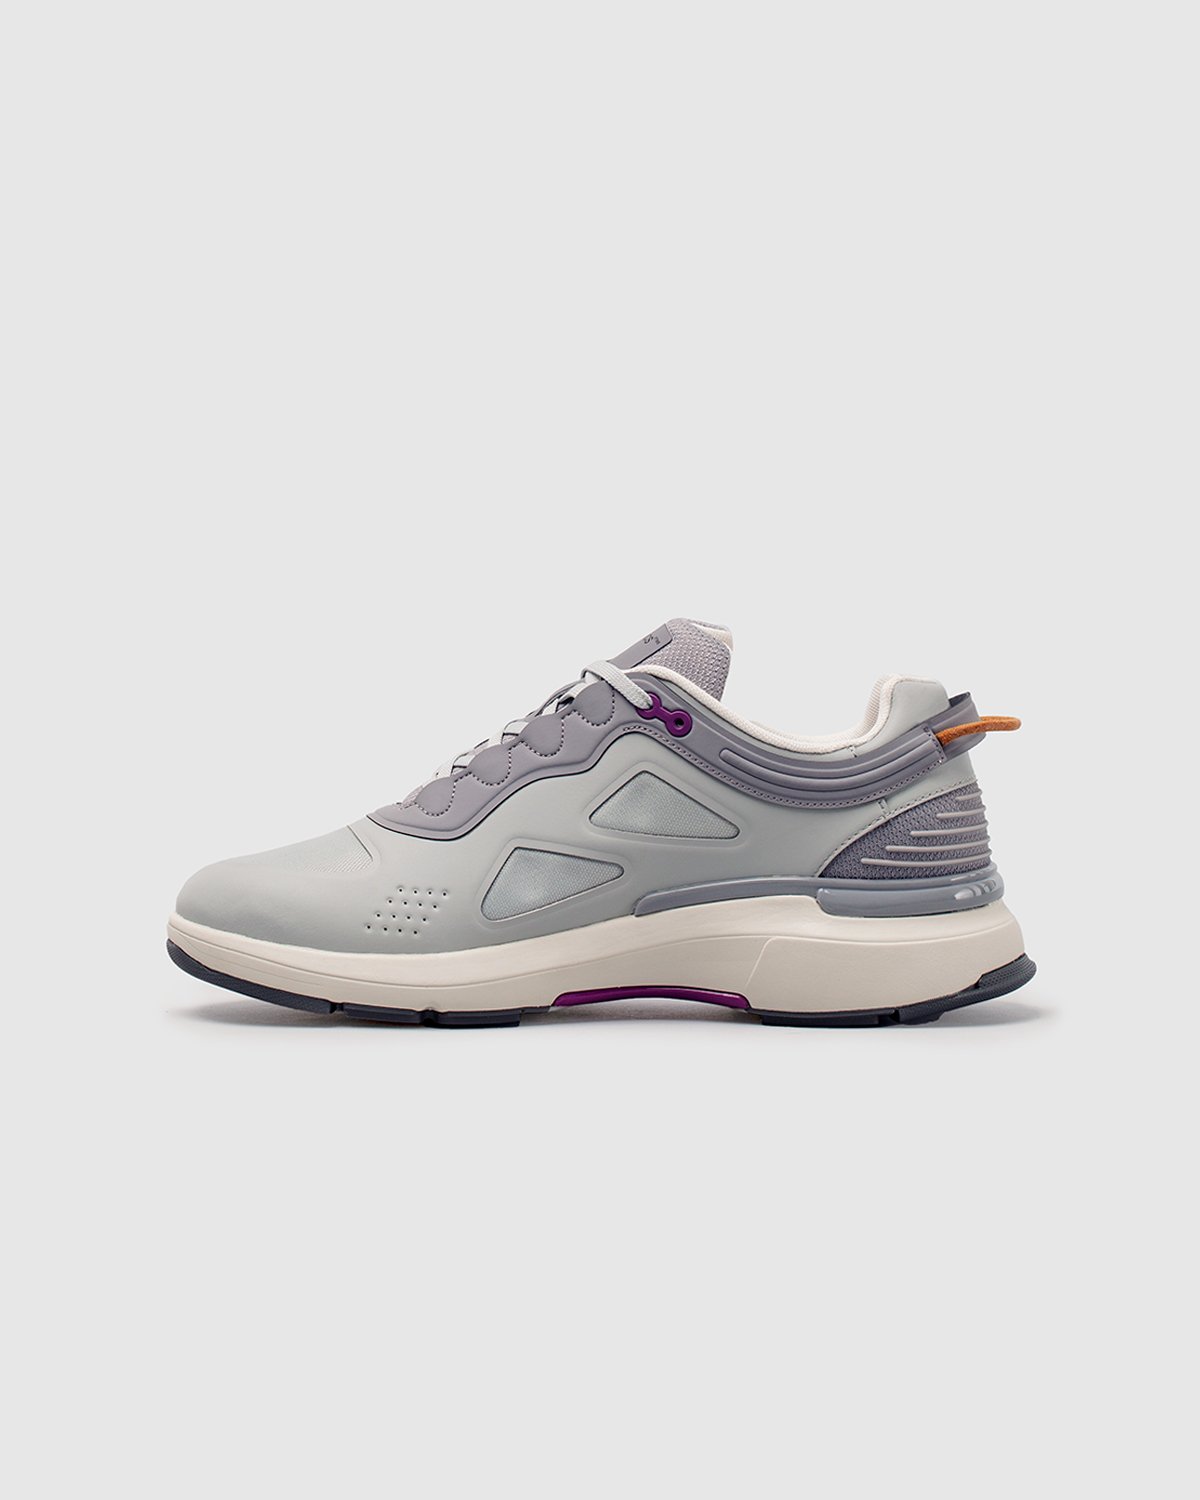 Athletics Footwear - ONE.2 Grey / Formal Grey / G3 Grape - Footwear - Grey - Image 4